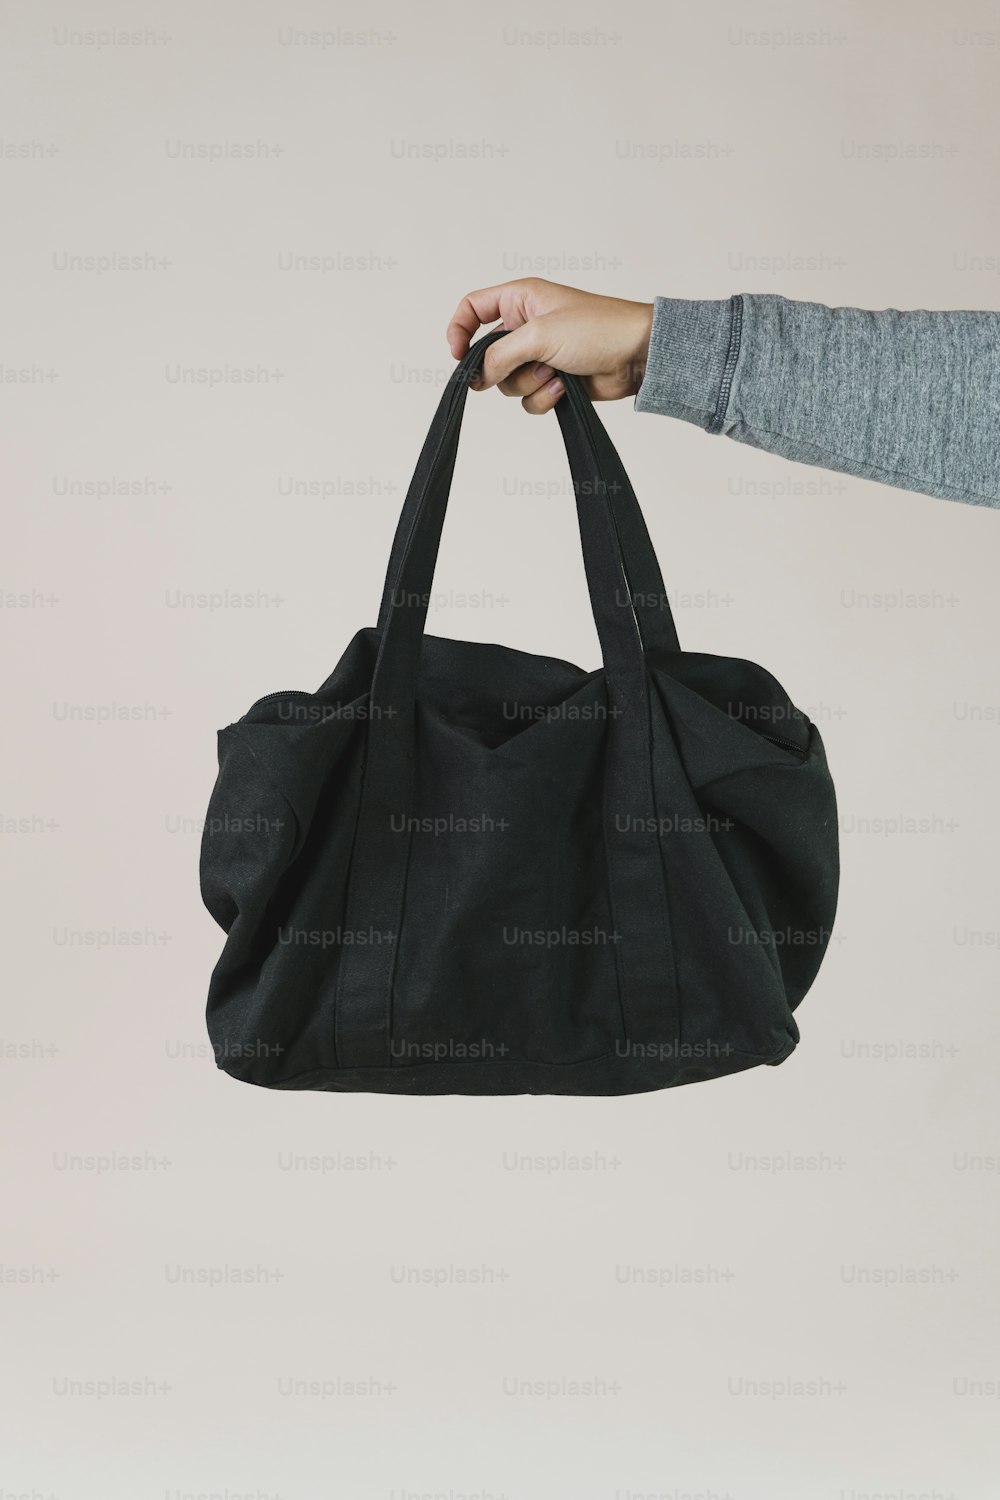 una persona sosteniendo una bolsa negra en la mano